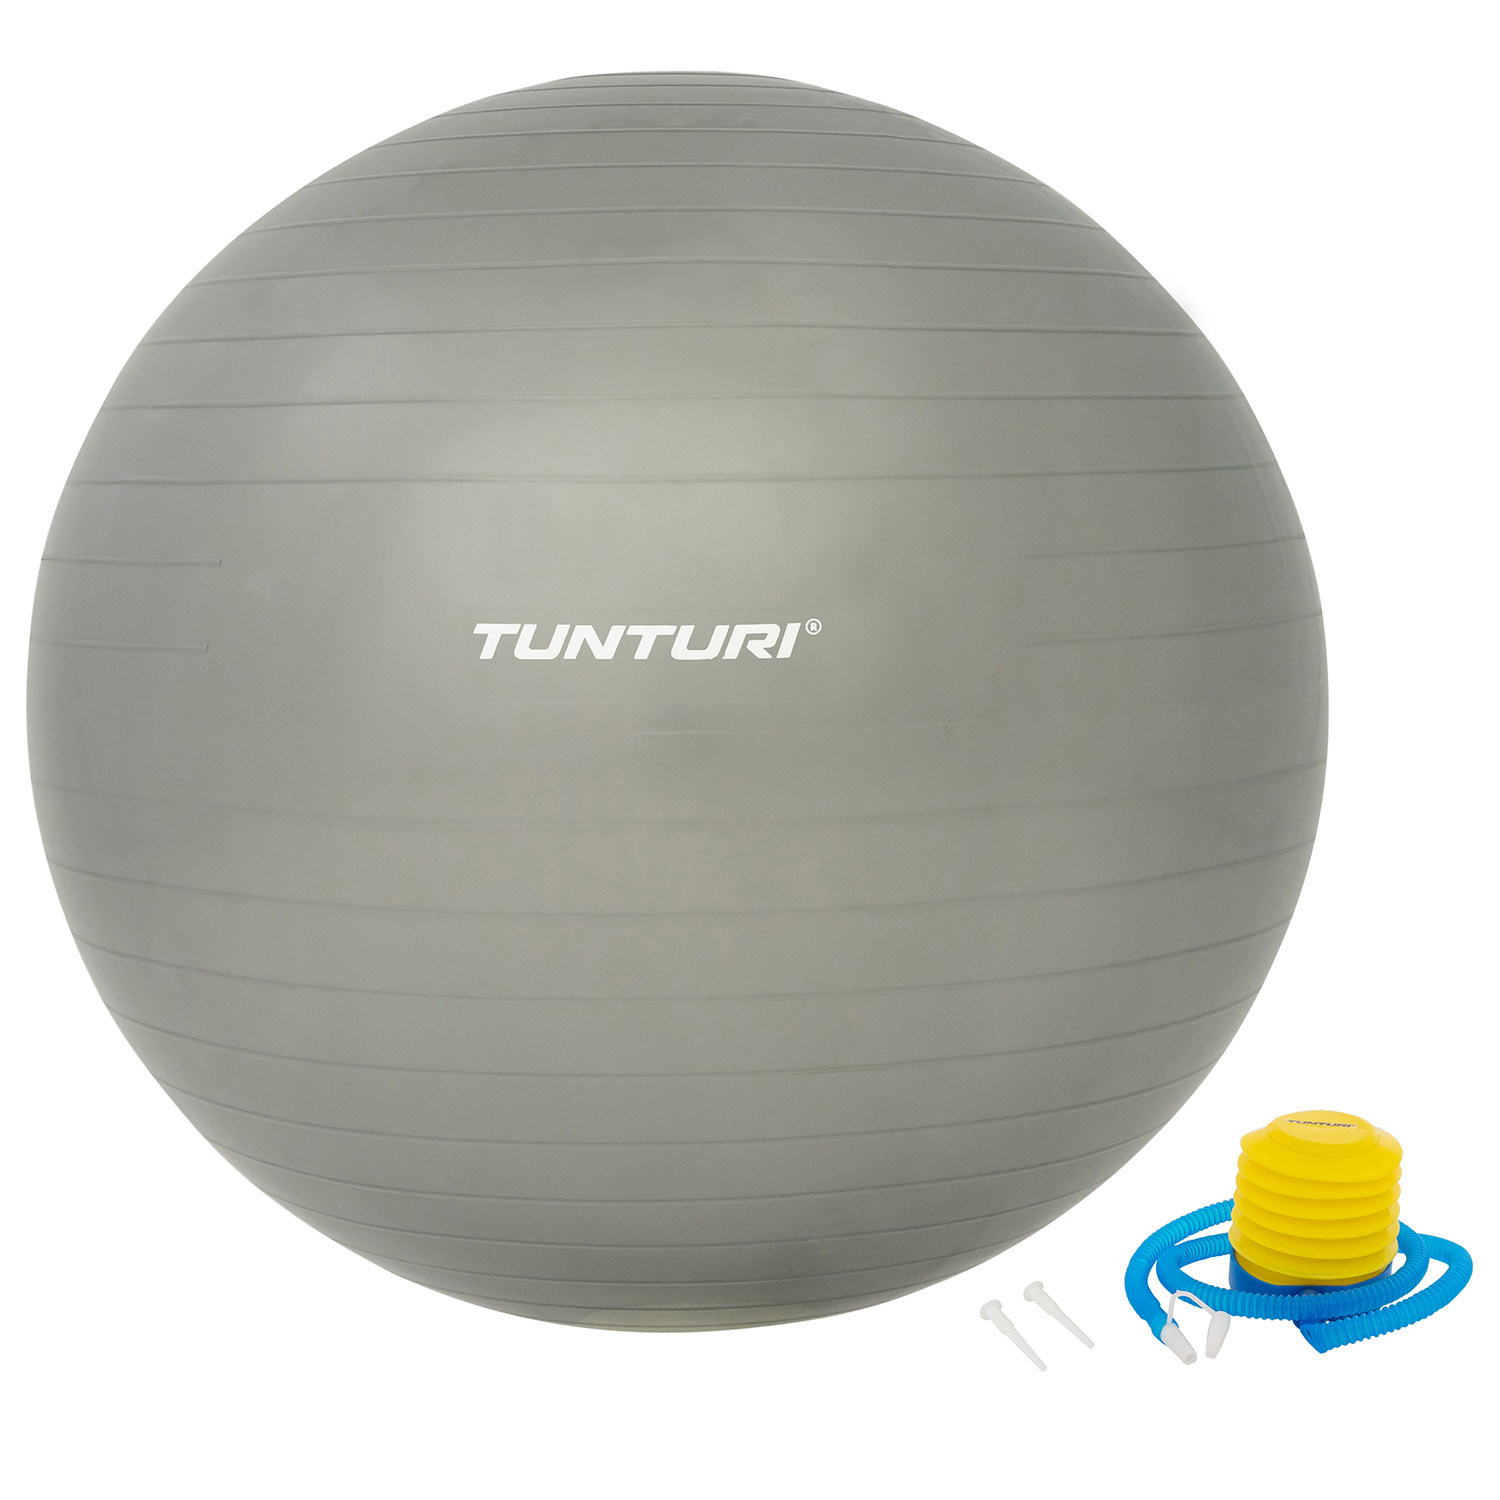 vrek zwaarlijvigheid schapen Fitnessbal - Gymball - Swiss ball - Inclusief pomp - Zilver - Tunturi  Fitness